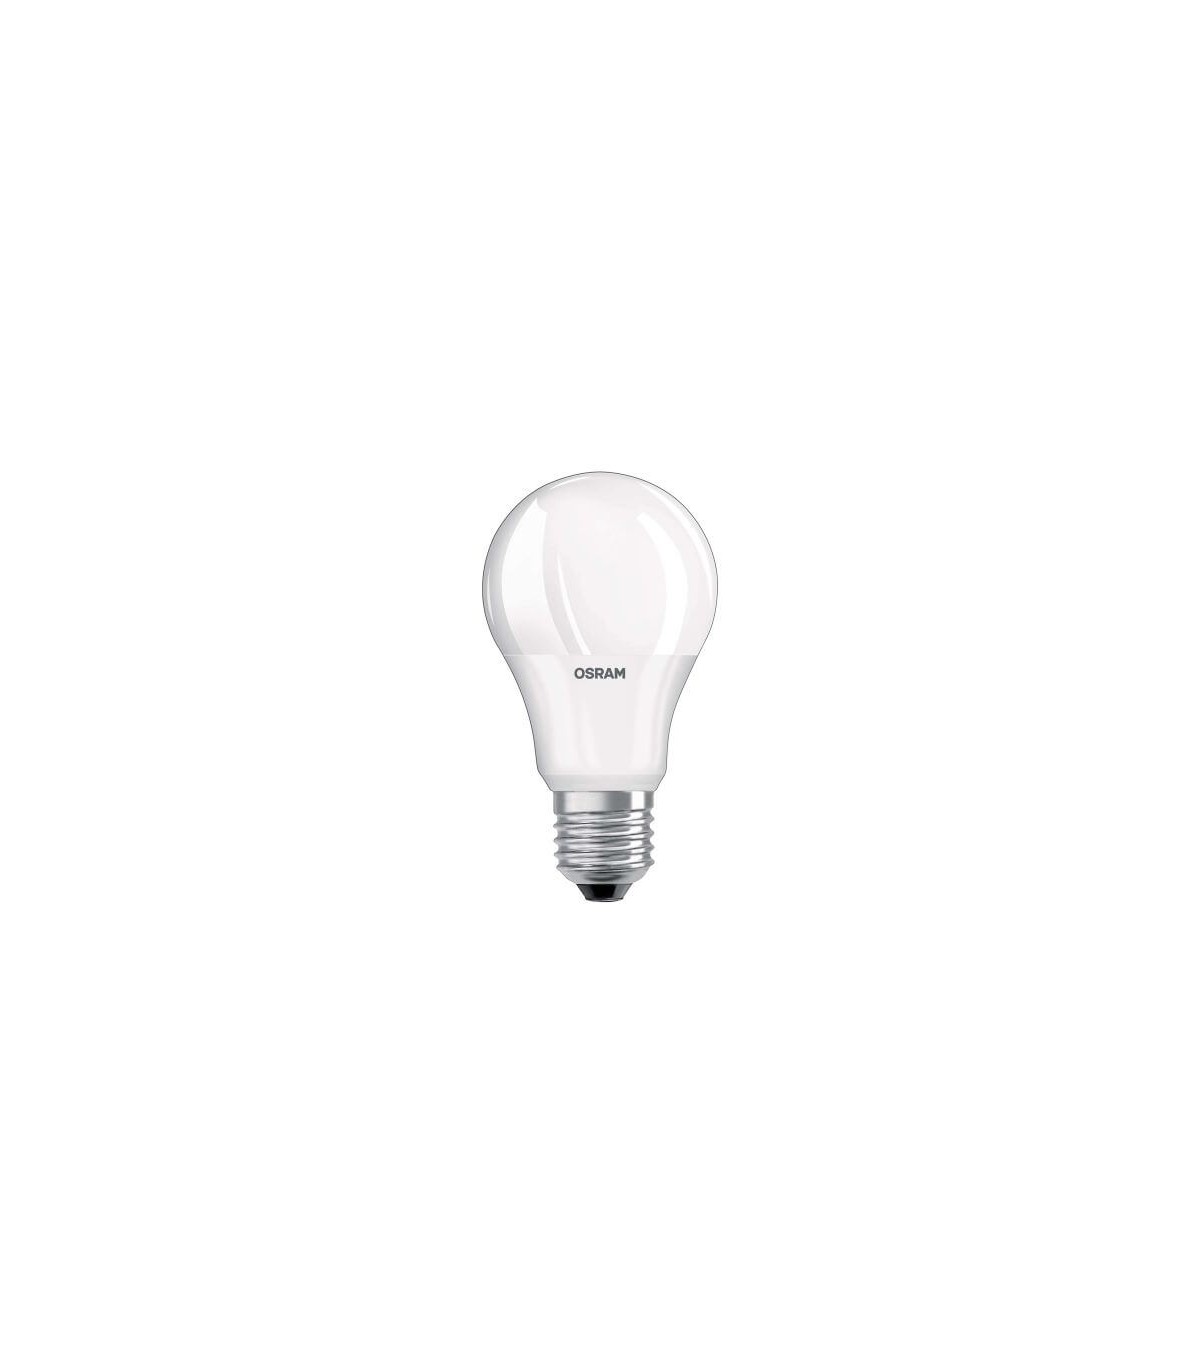 Ampoule LED LUXEN GLOBE G120 17W équivalent 100W 1521lumens Blanc